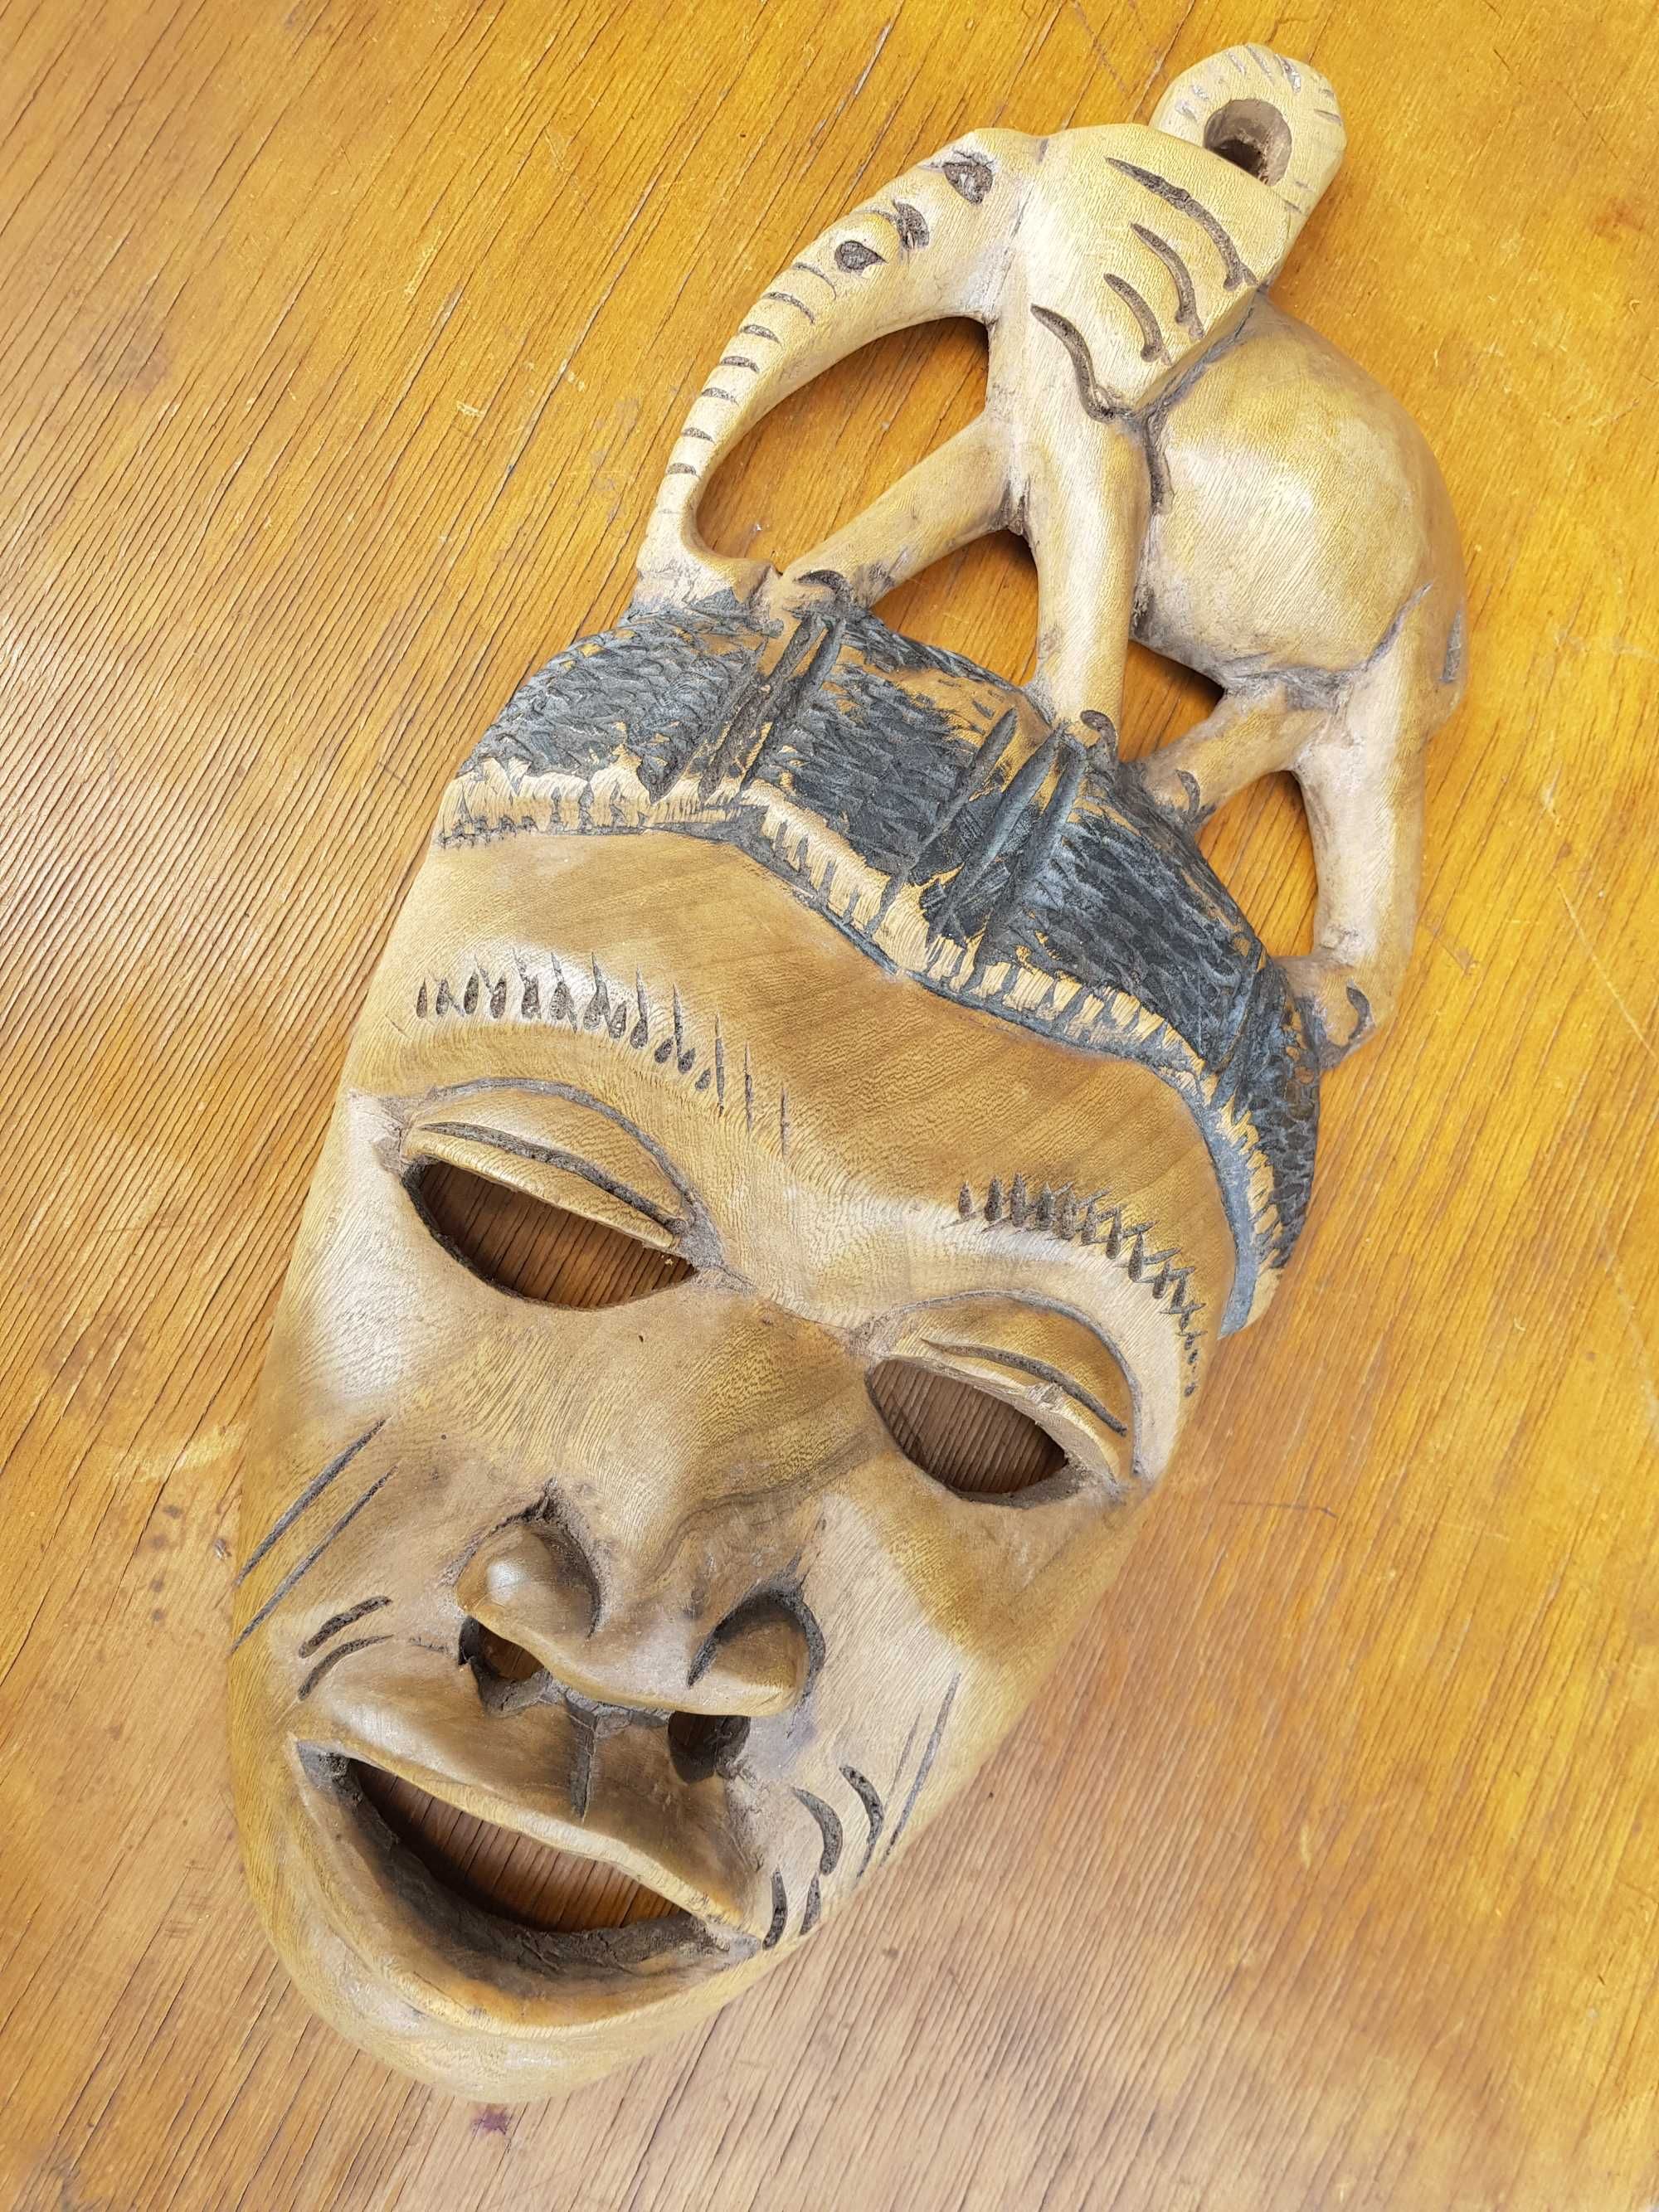 Stara drewniana maska afrykańska człowiek ze słoniem